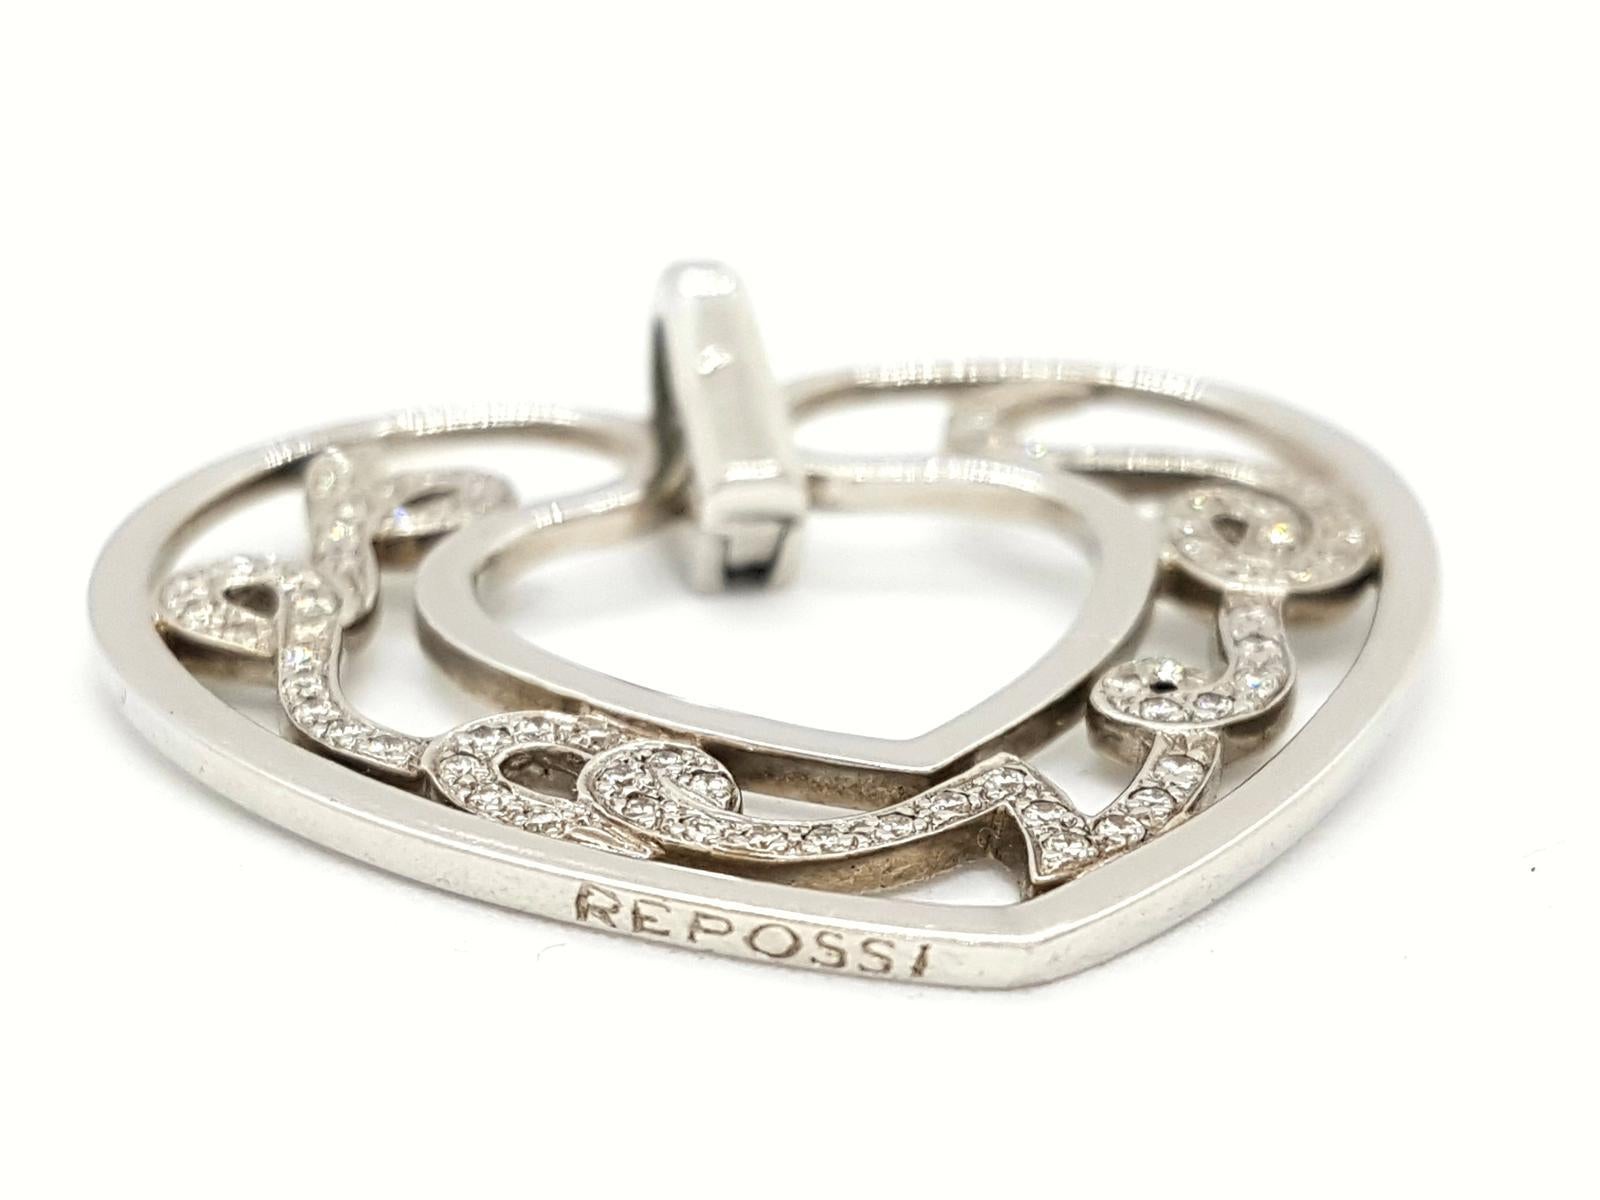 Repossi Pendant Necklace Love White Gold Diamond For Sale 1